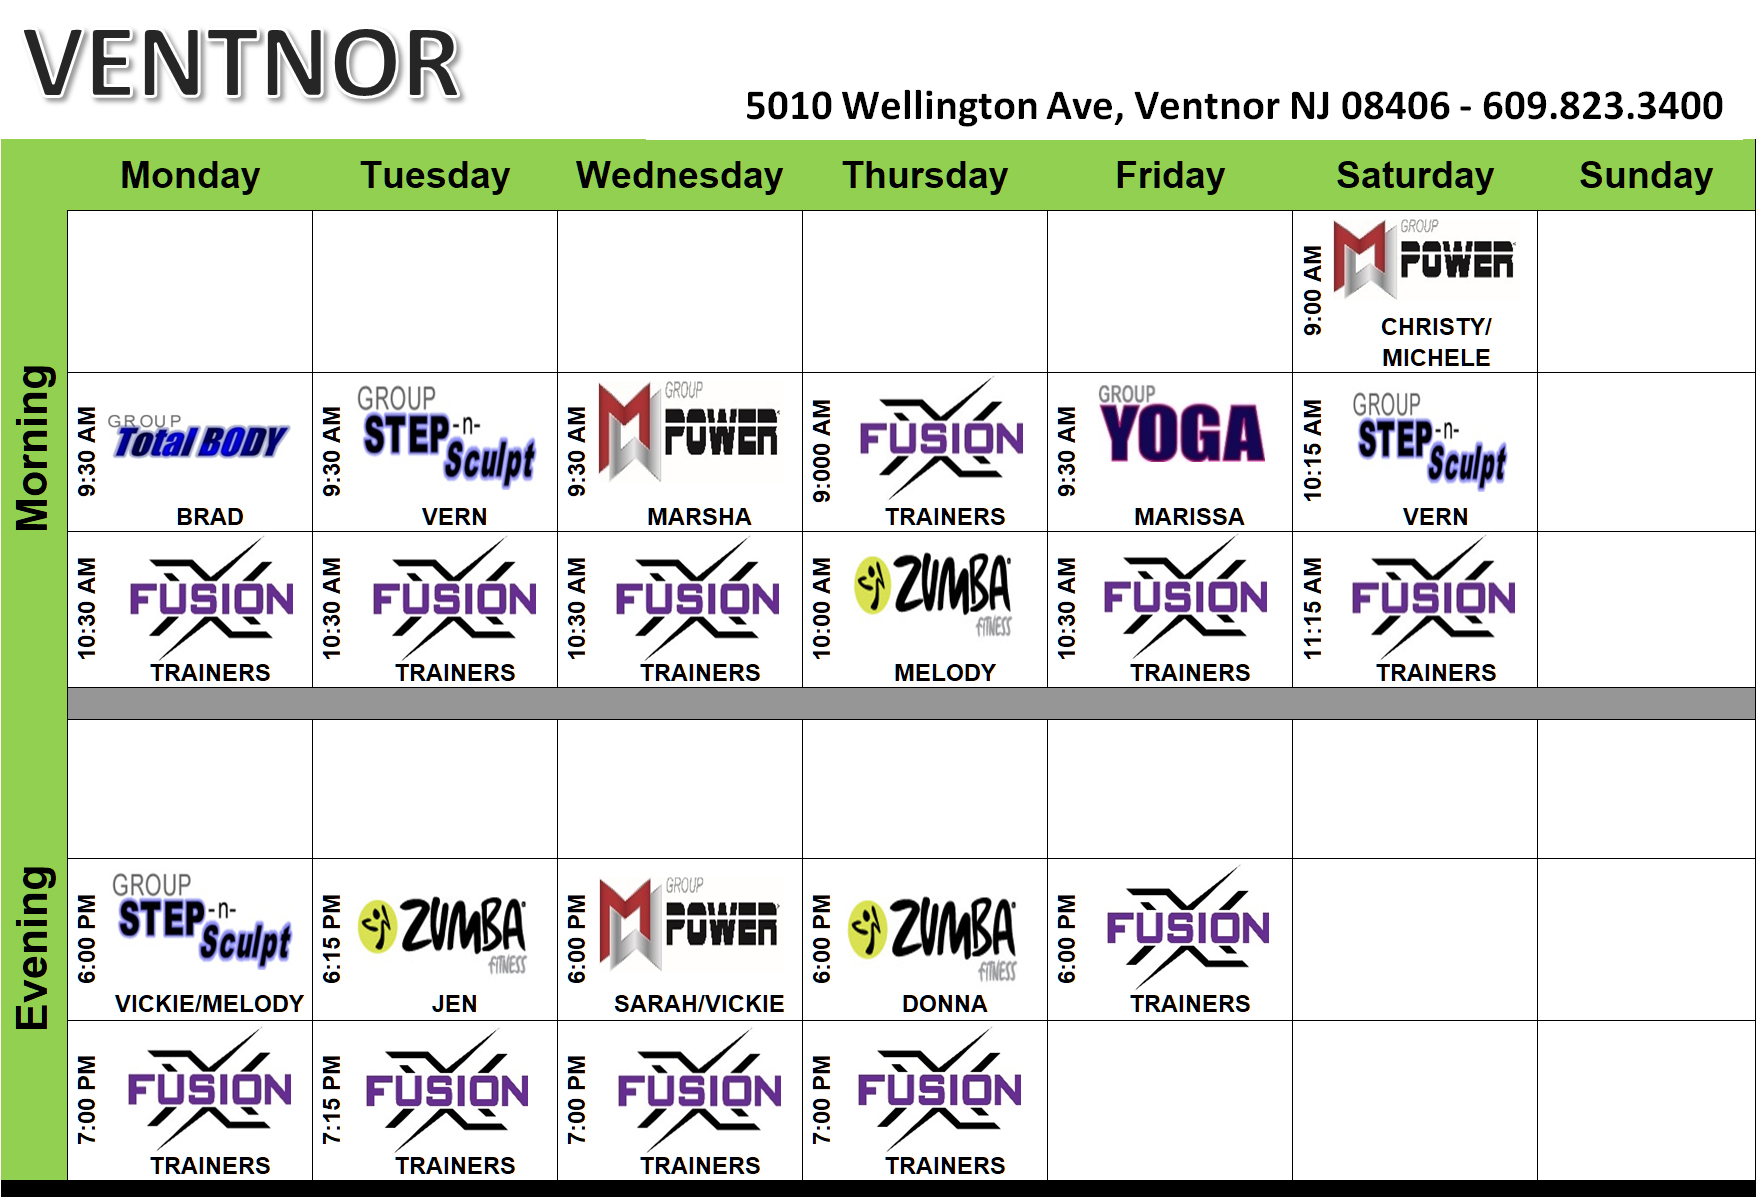 Ventnor Classes, Training, Events Calendar Island Gym